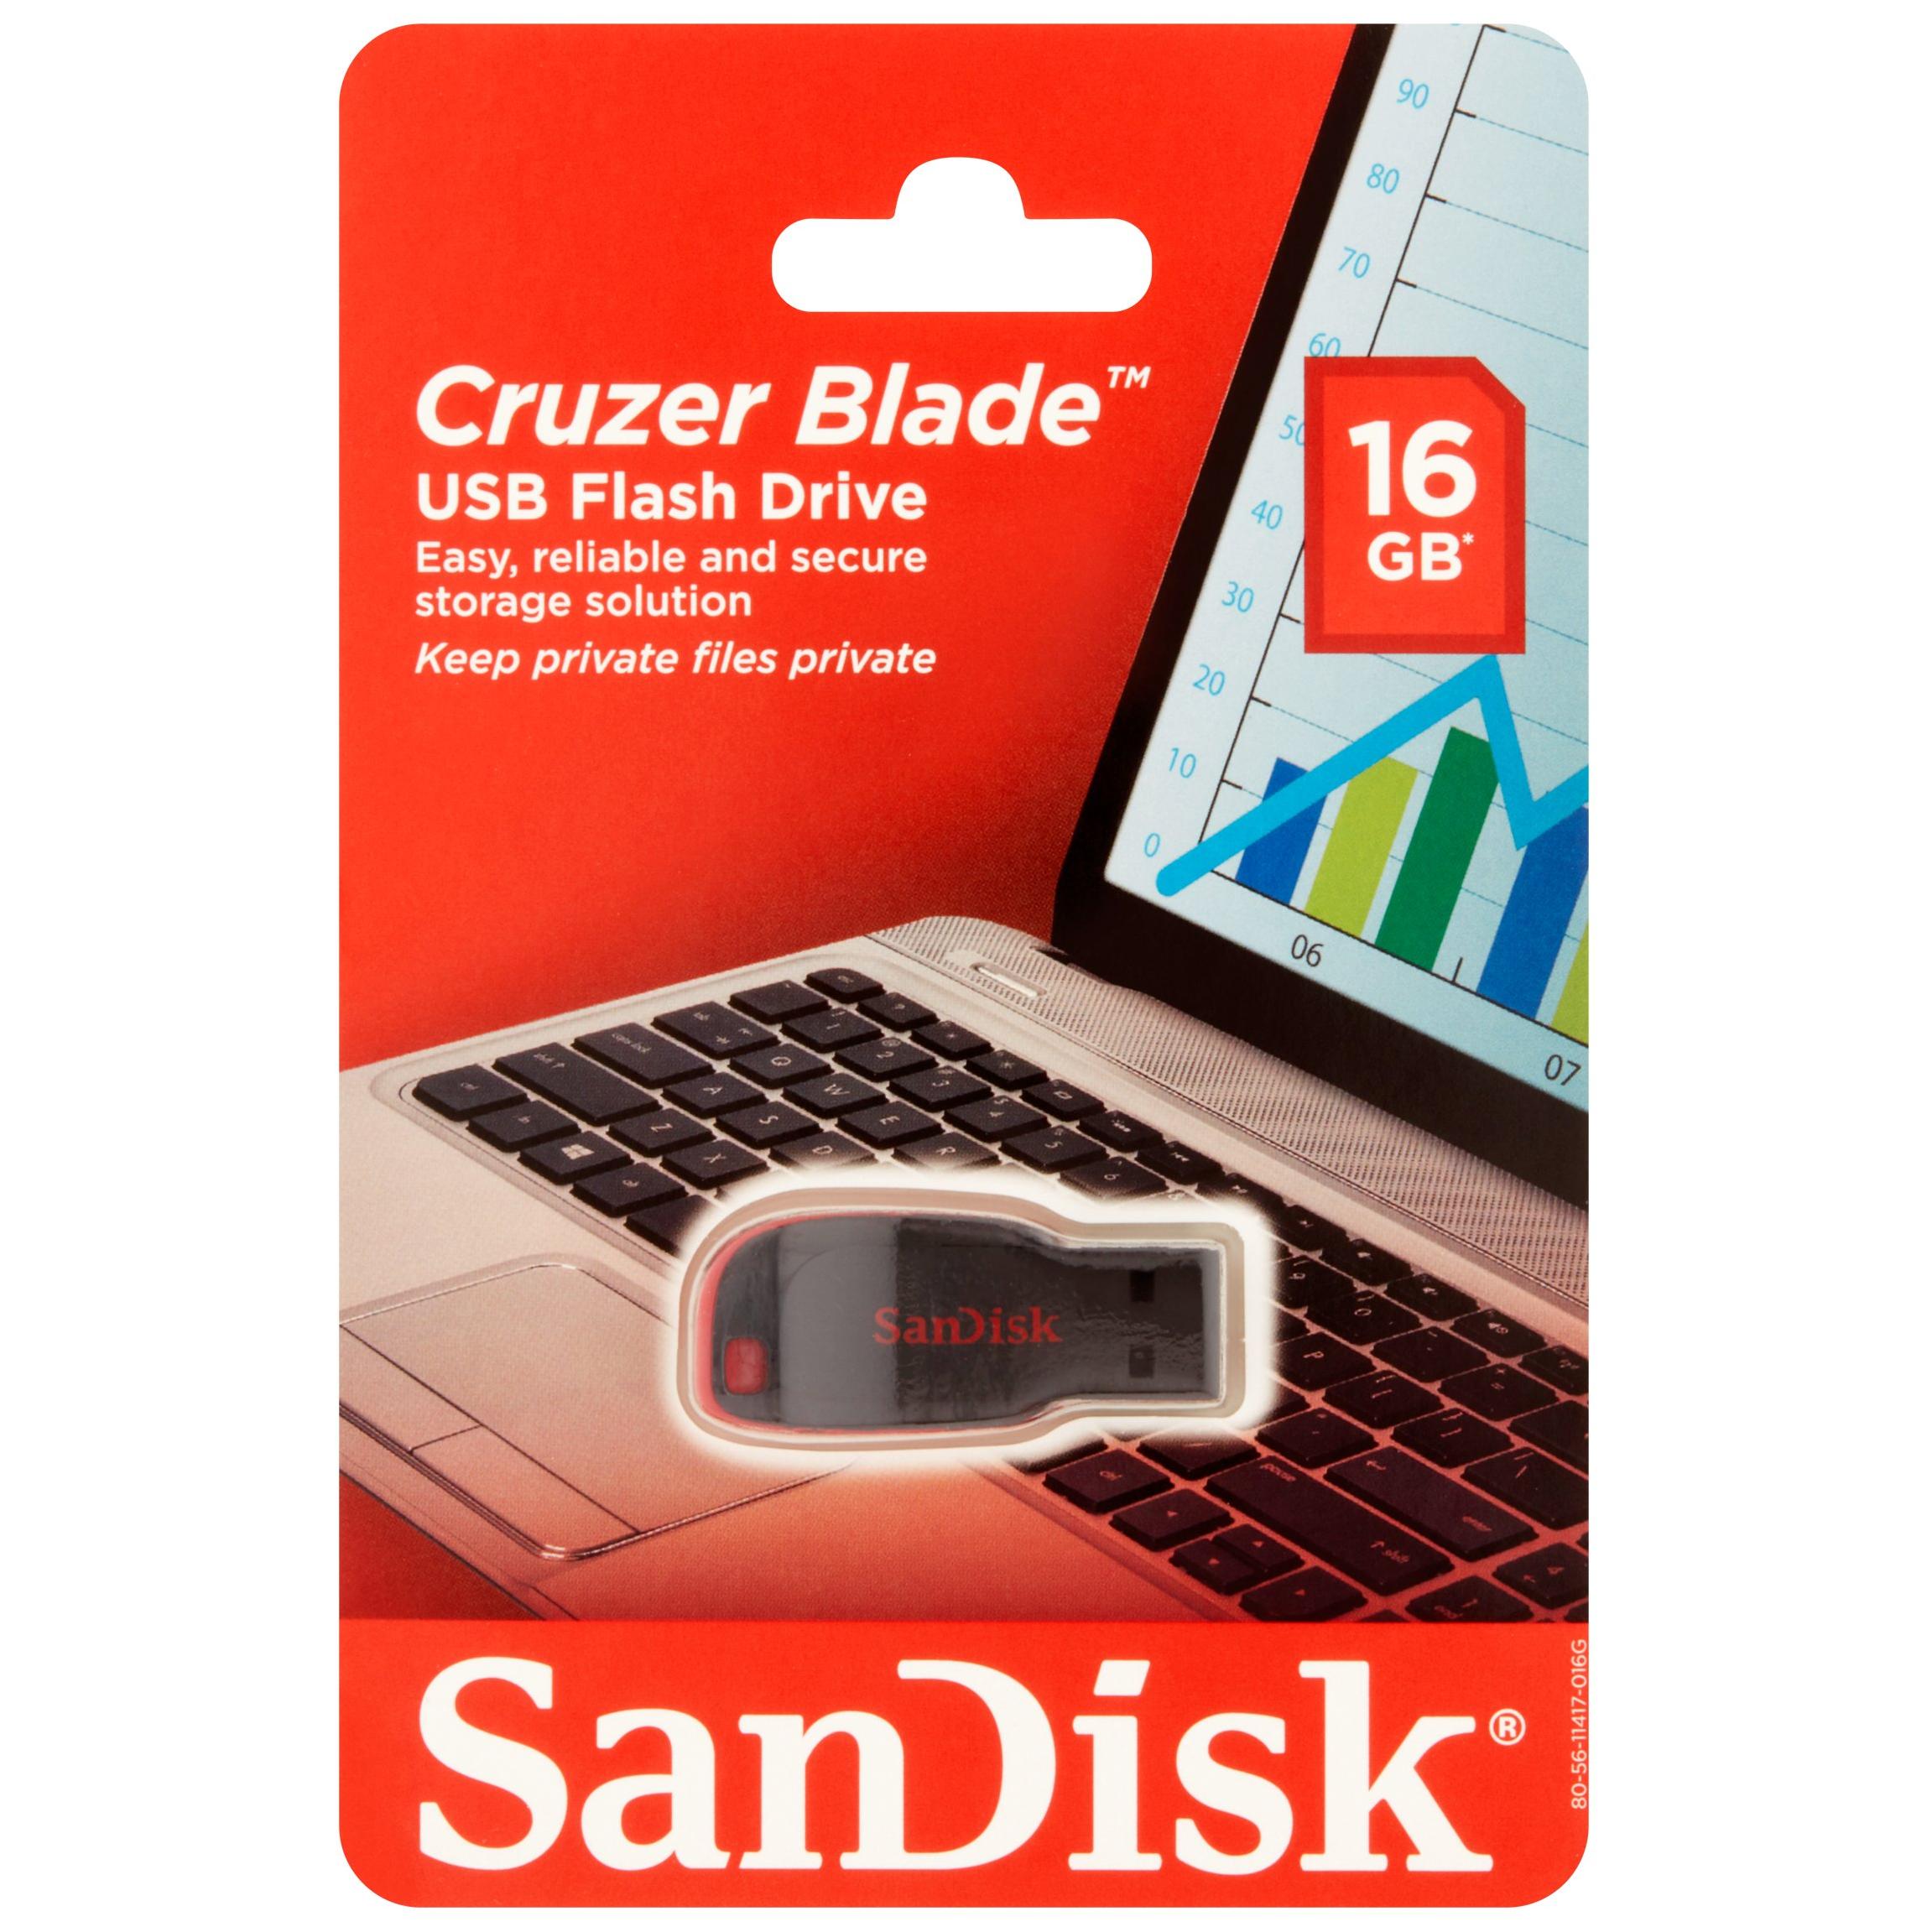 SanDisk CZ50 16GB USB Flash Drive 3-Pack Value Bundle - image 1 of 2